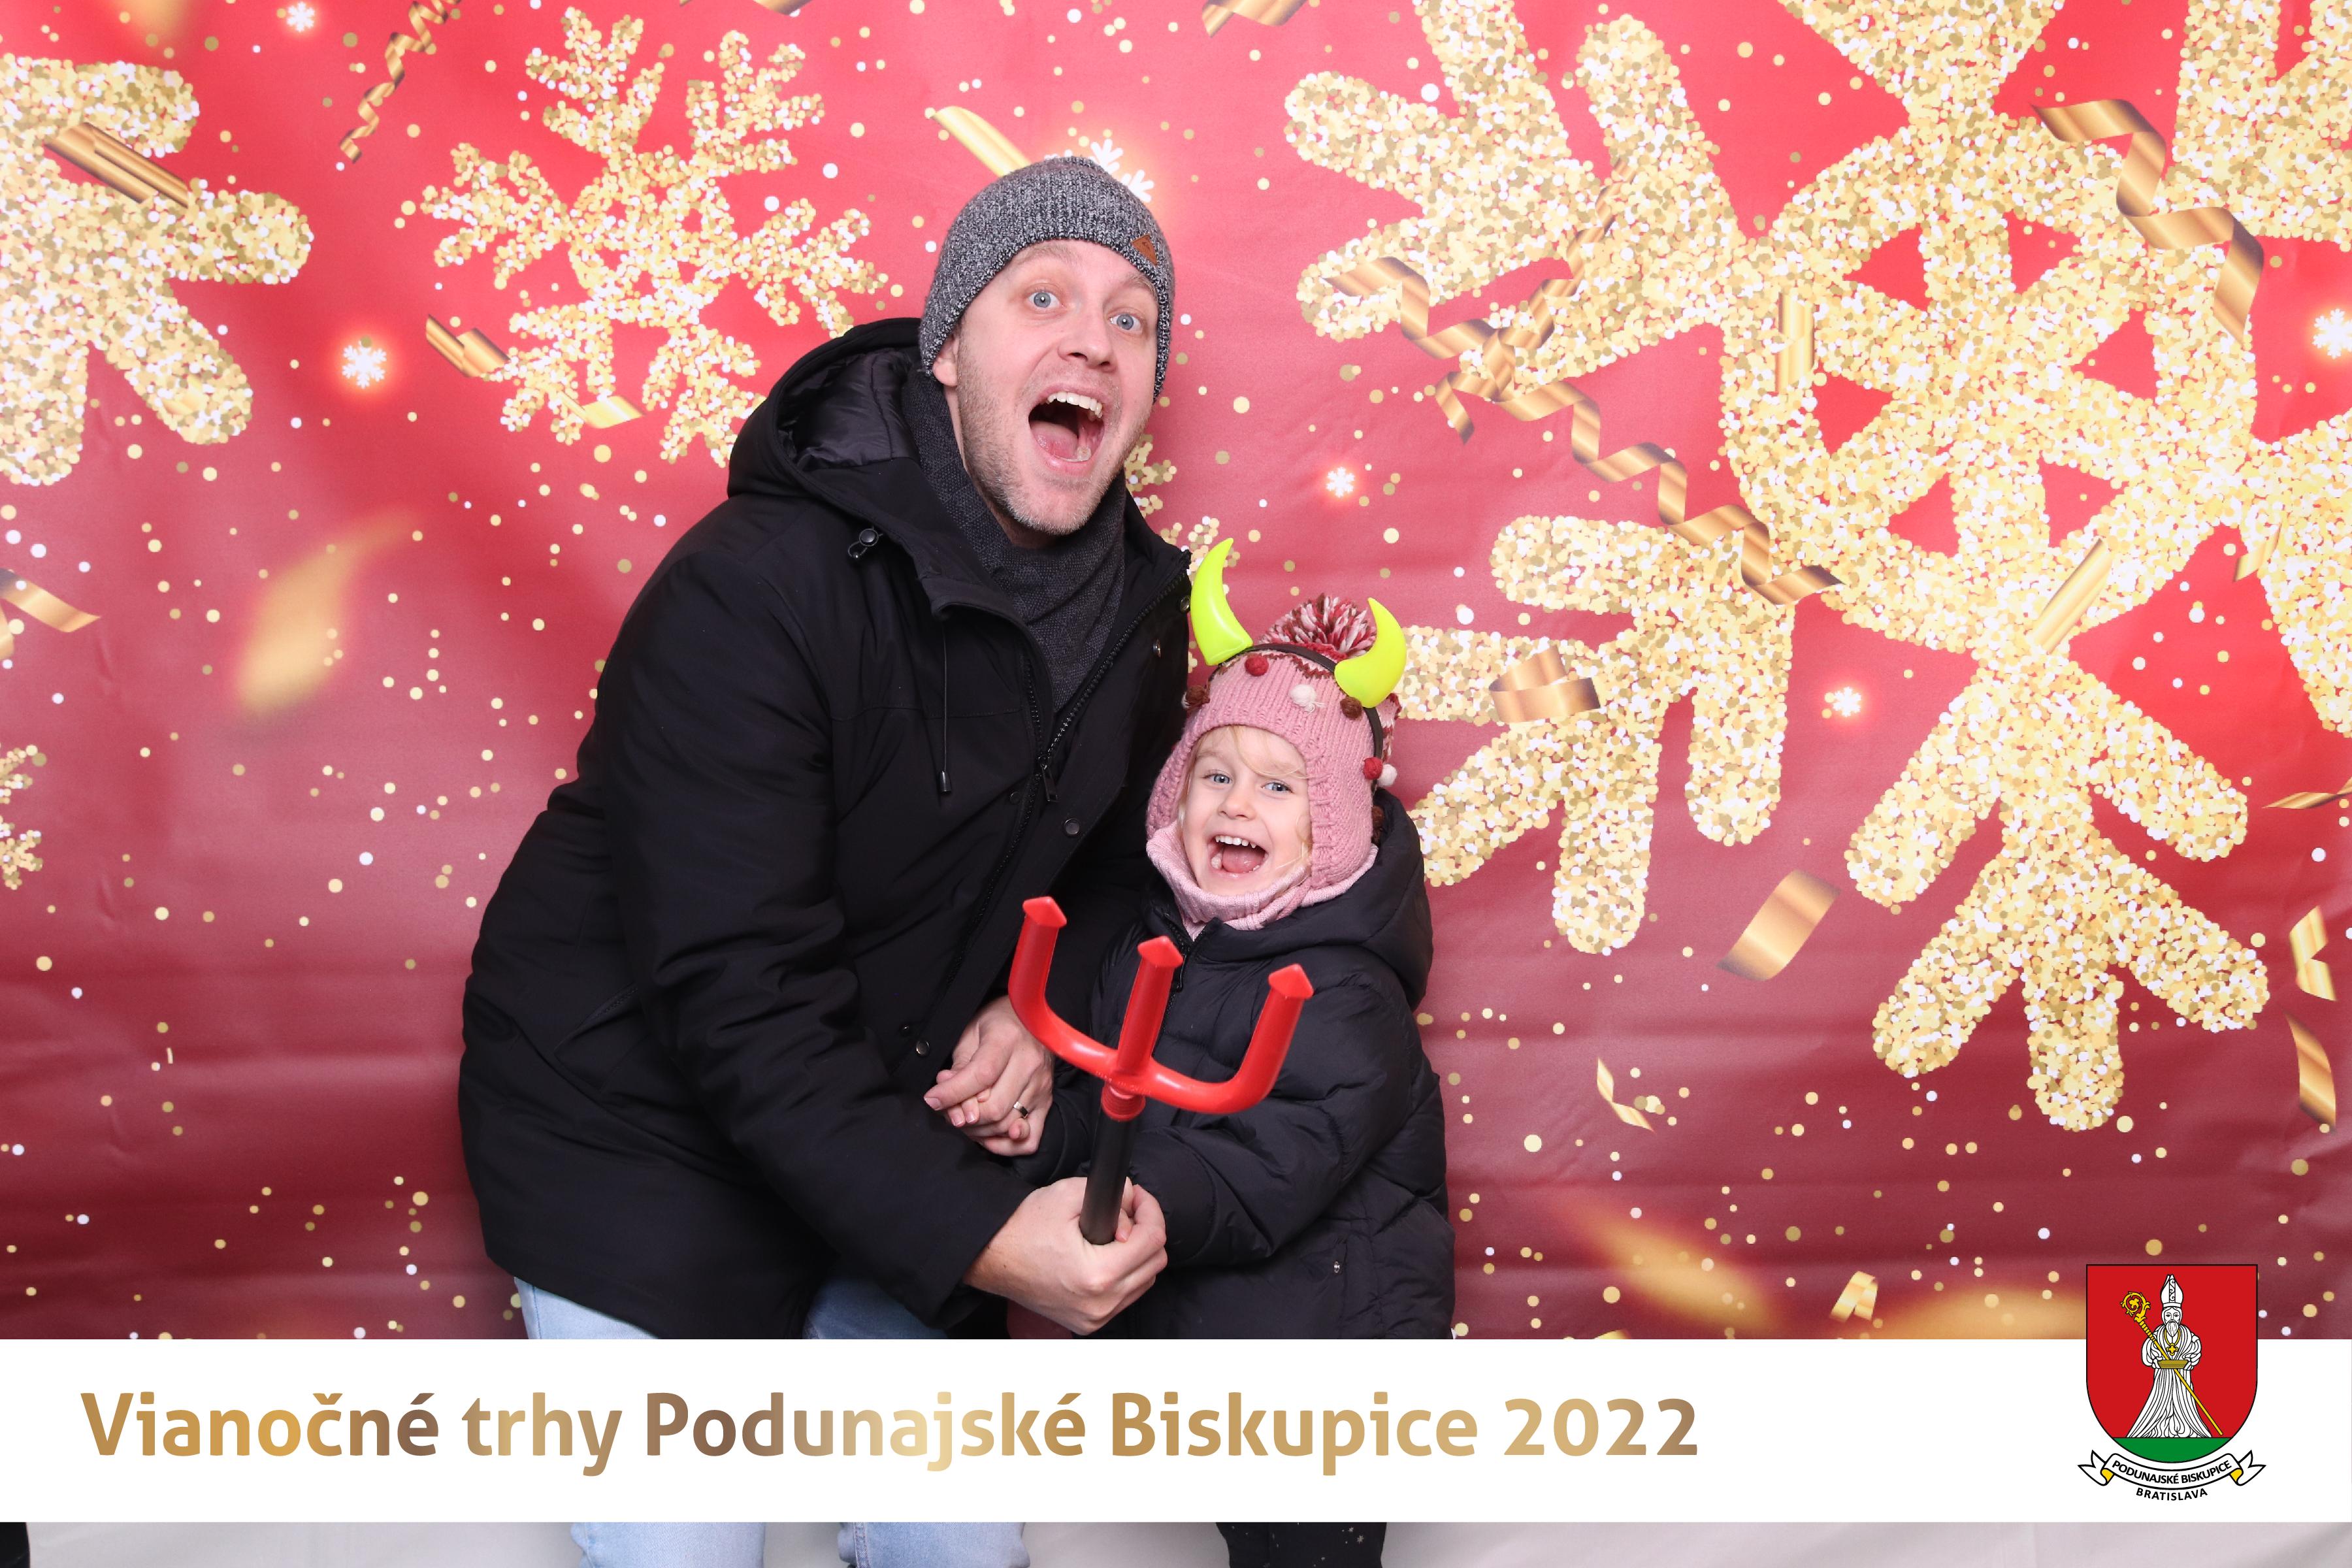 Vianočné trhy Podunajské Biskupice 